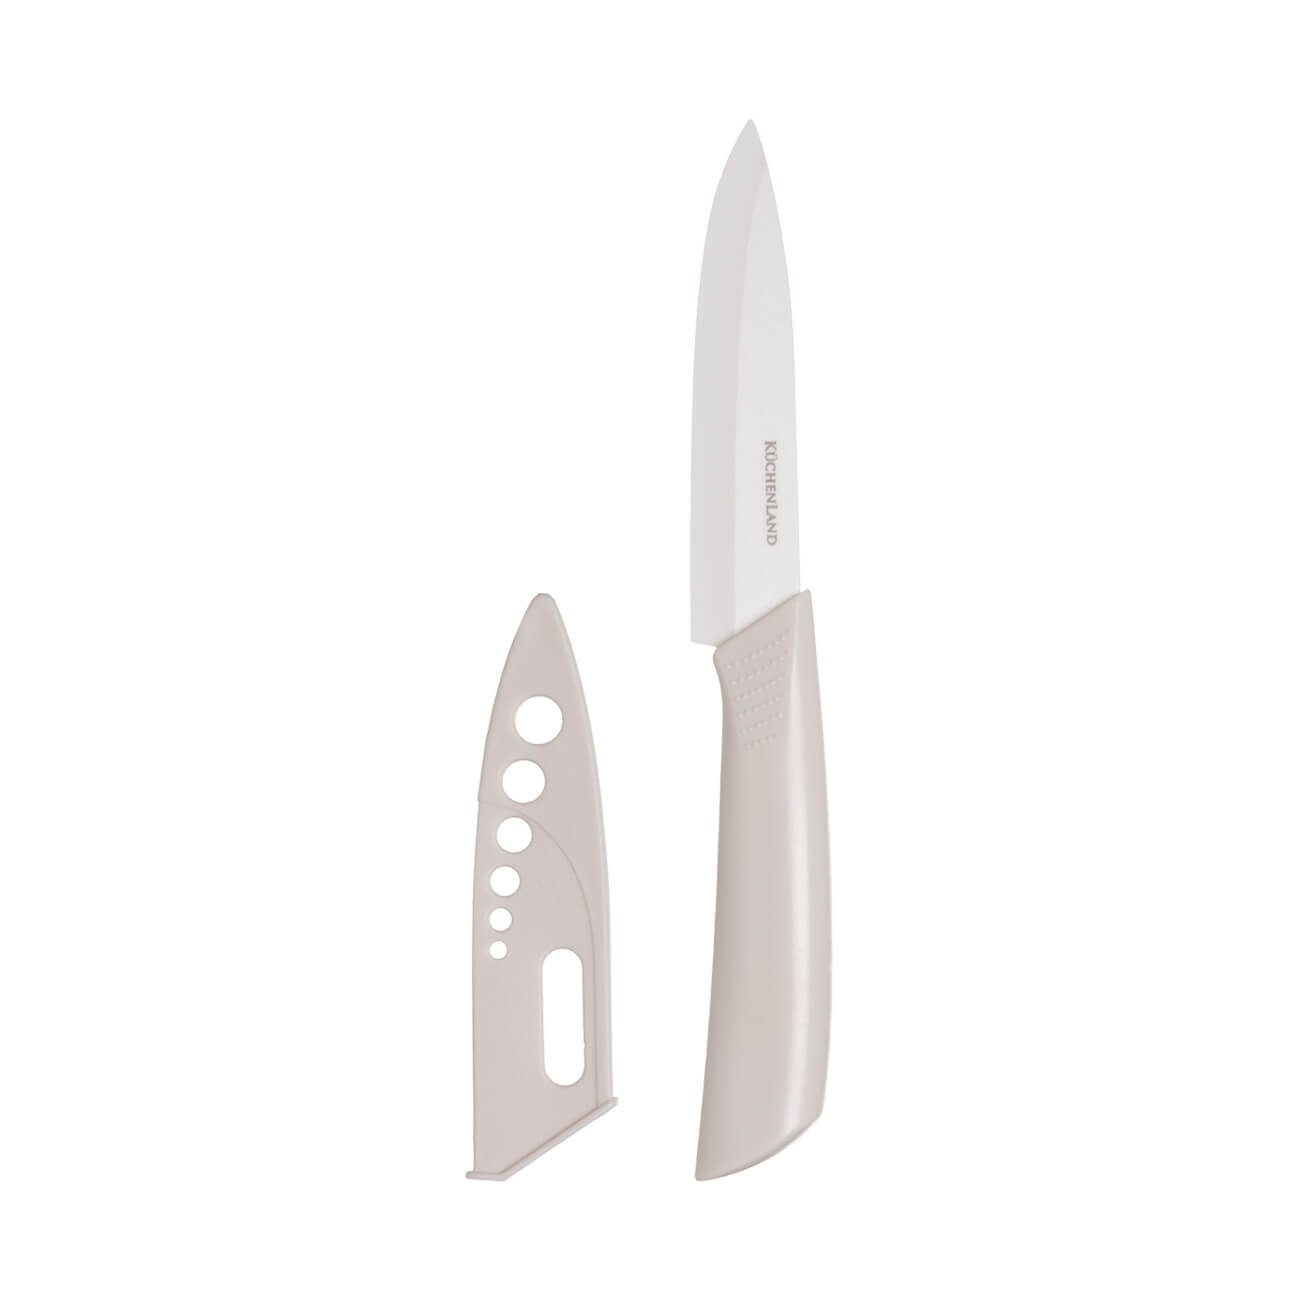 Paring knife, 10 cm, with case, ceramic/plastic, milk, Regular изображение № 1